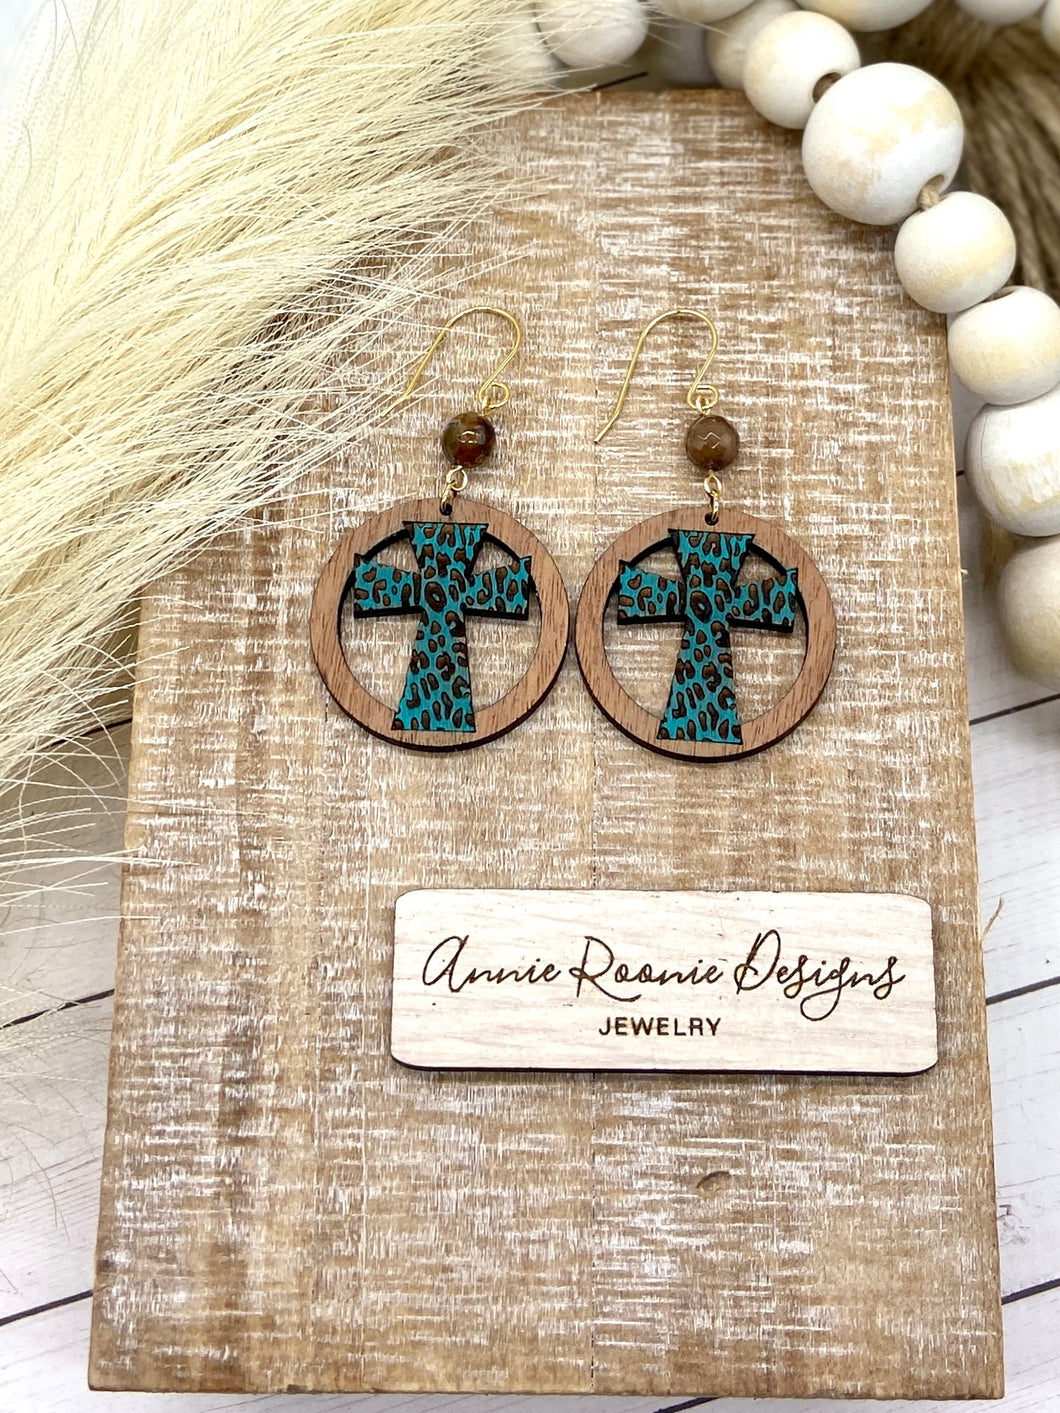 Handpainted Wooden Circle Cross earrings